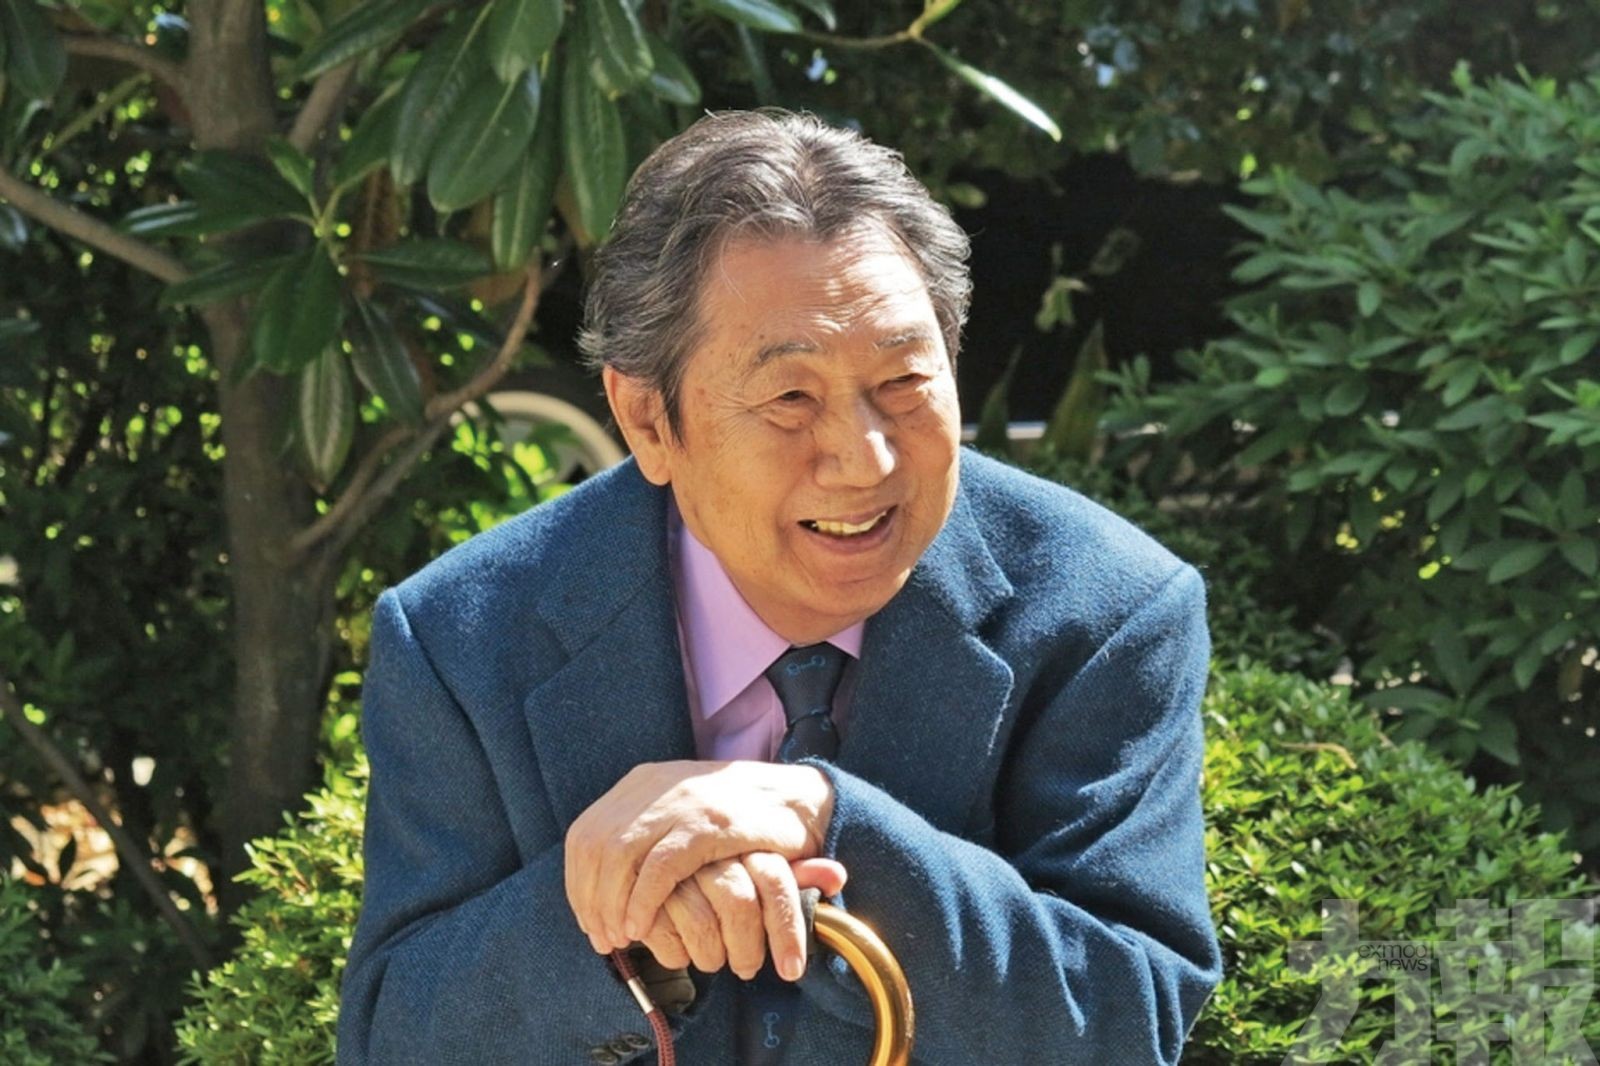 89歲菊池俊輔肺炎病逝